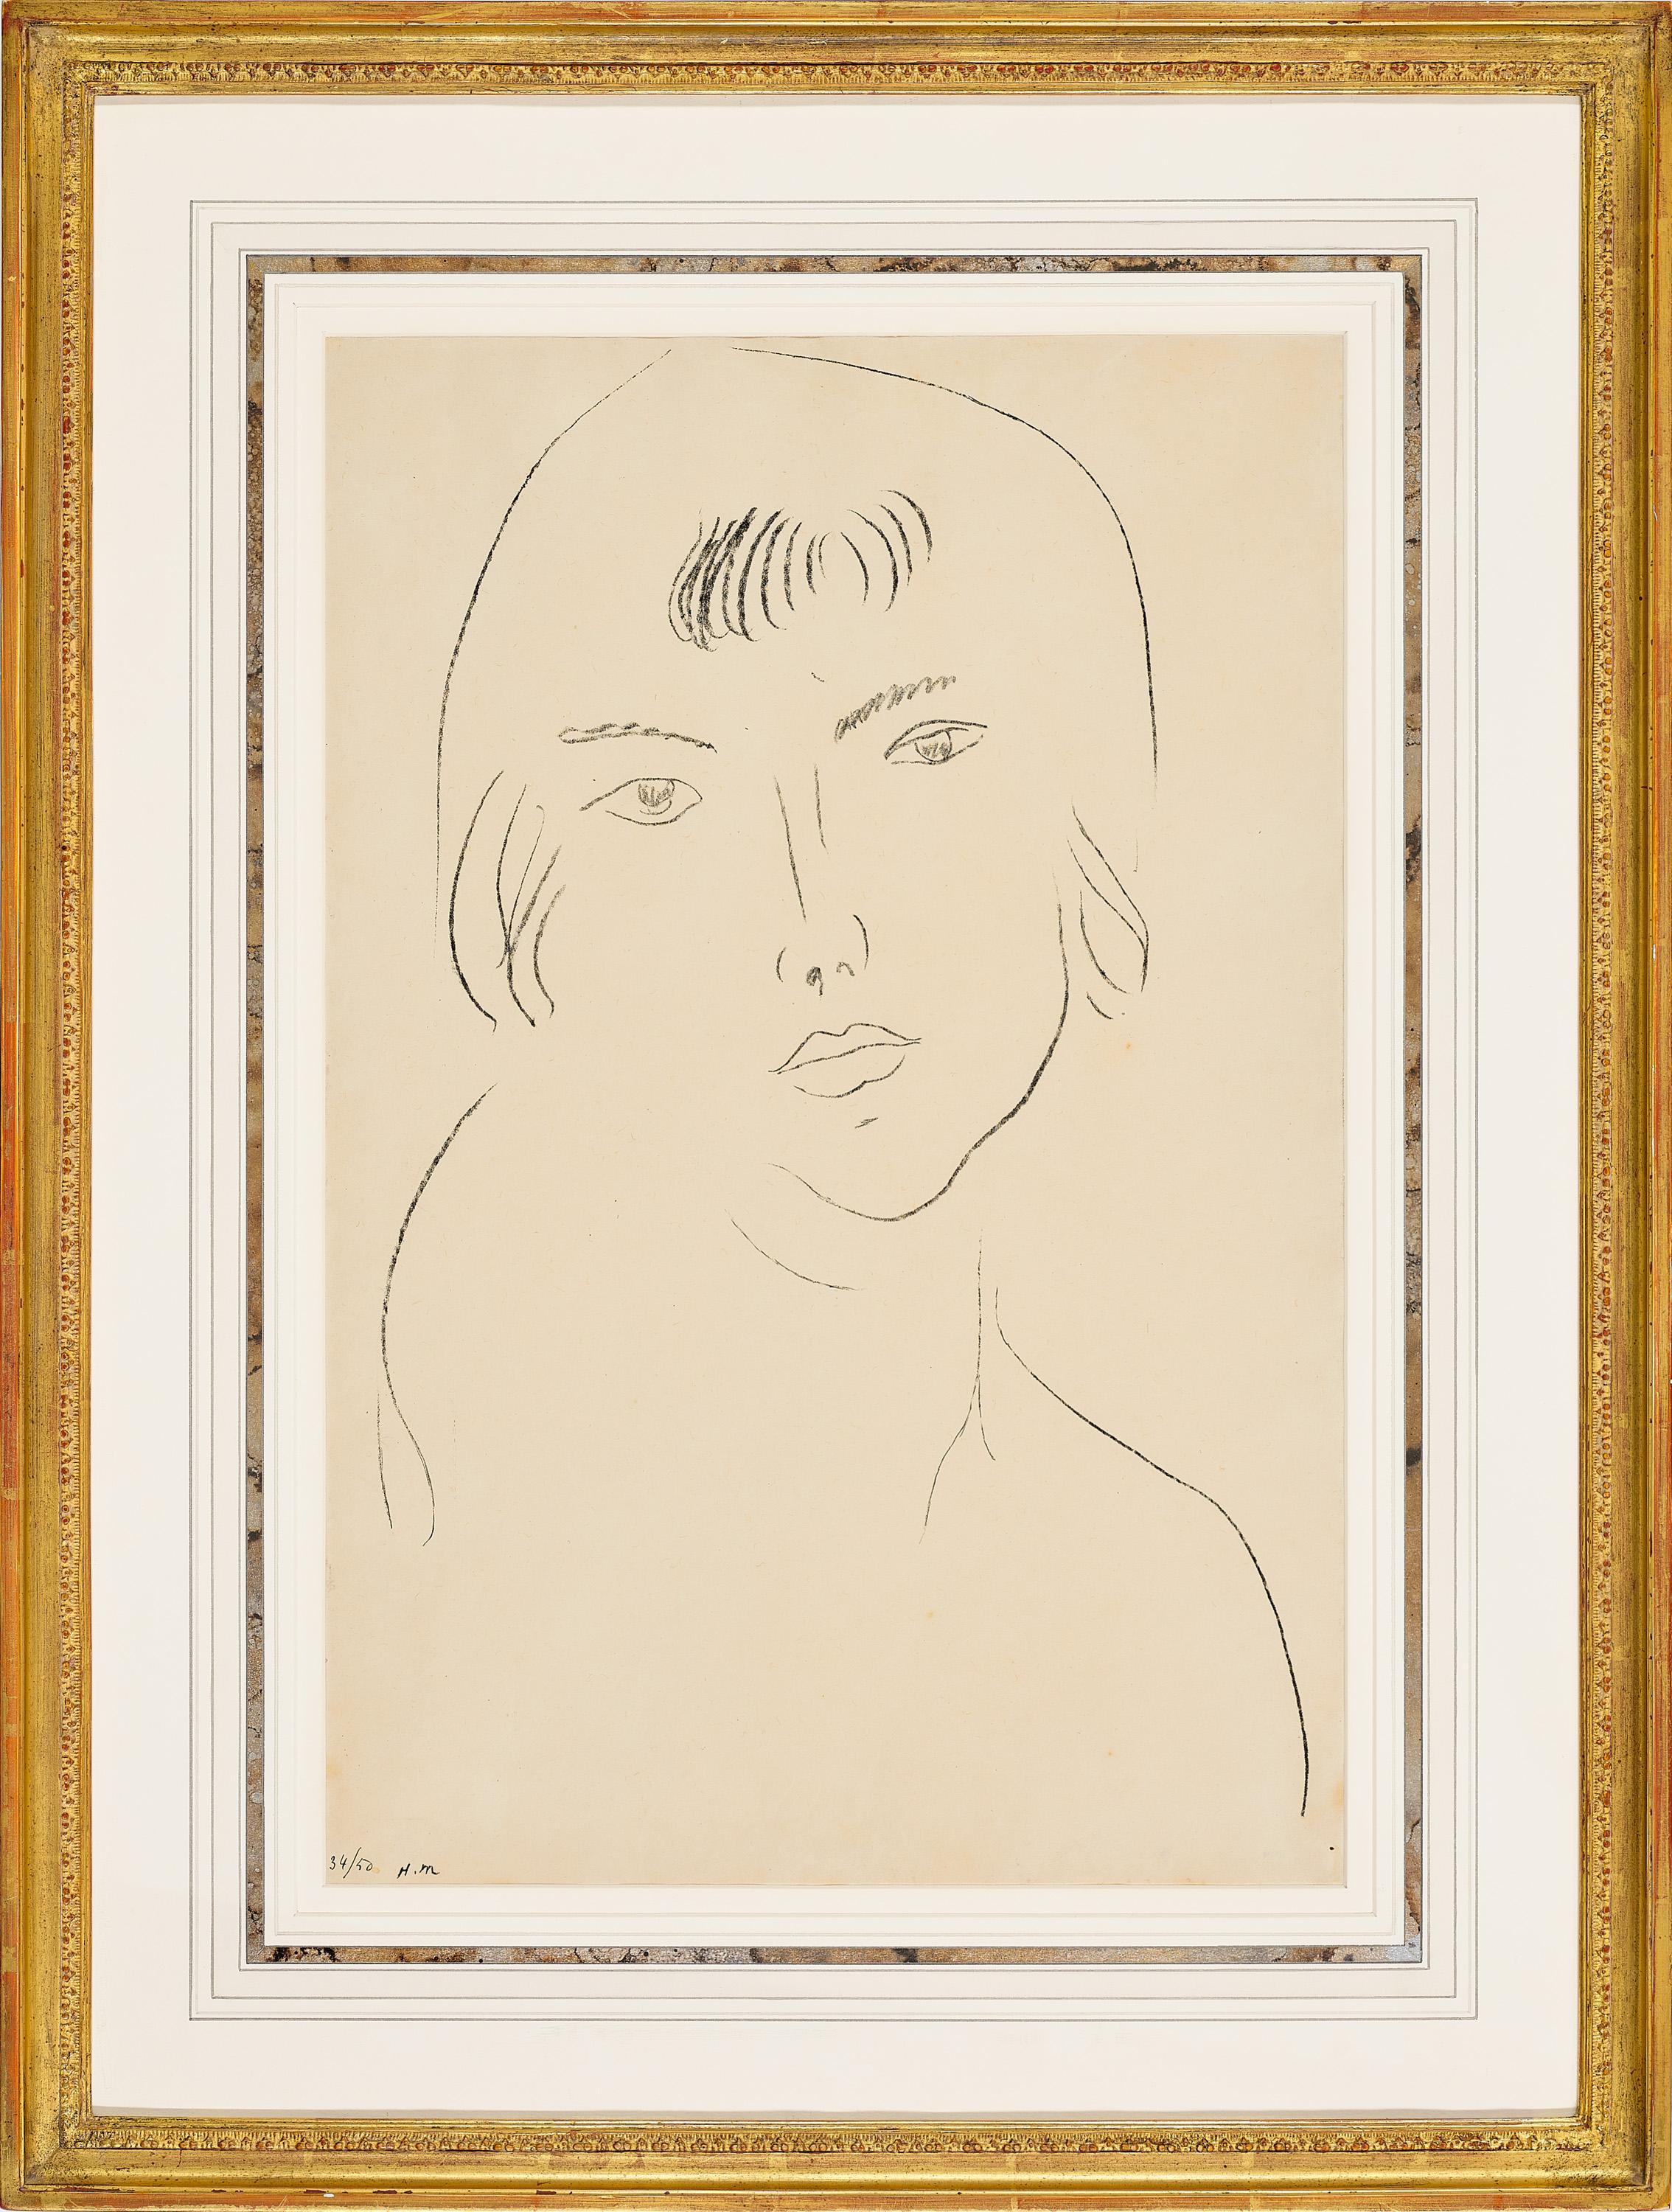 Henri Matisse 
Visage À La Frange, 1913
lithographie sur papier japon
Edition : 34/50
Signé à la main avec les initiales et numéroté sous l'image
Taille de l'image 49.0 x 32.5 cm 
Dimensions du cadre 70,0 x 53,0 cm 

LITTÉRATURE
Matisse, M. et C.C.,